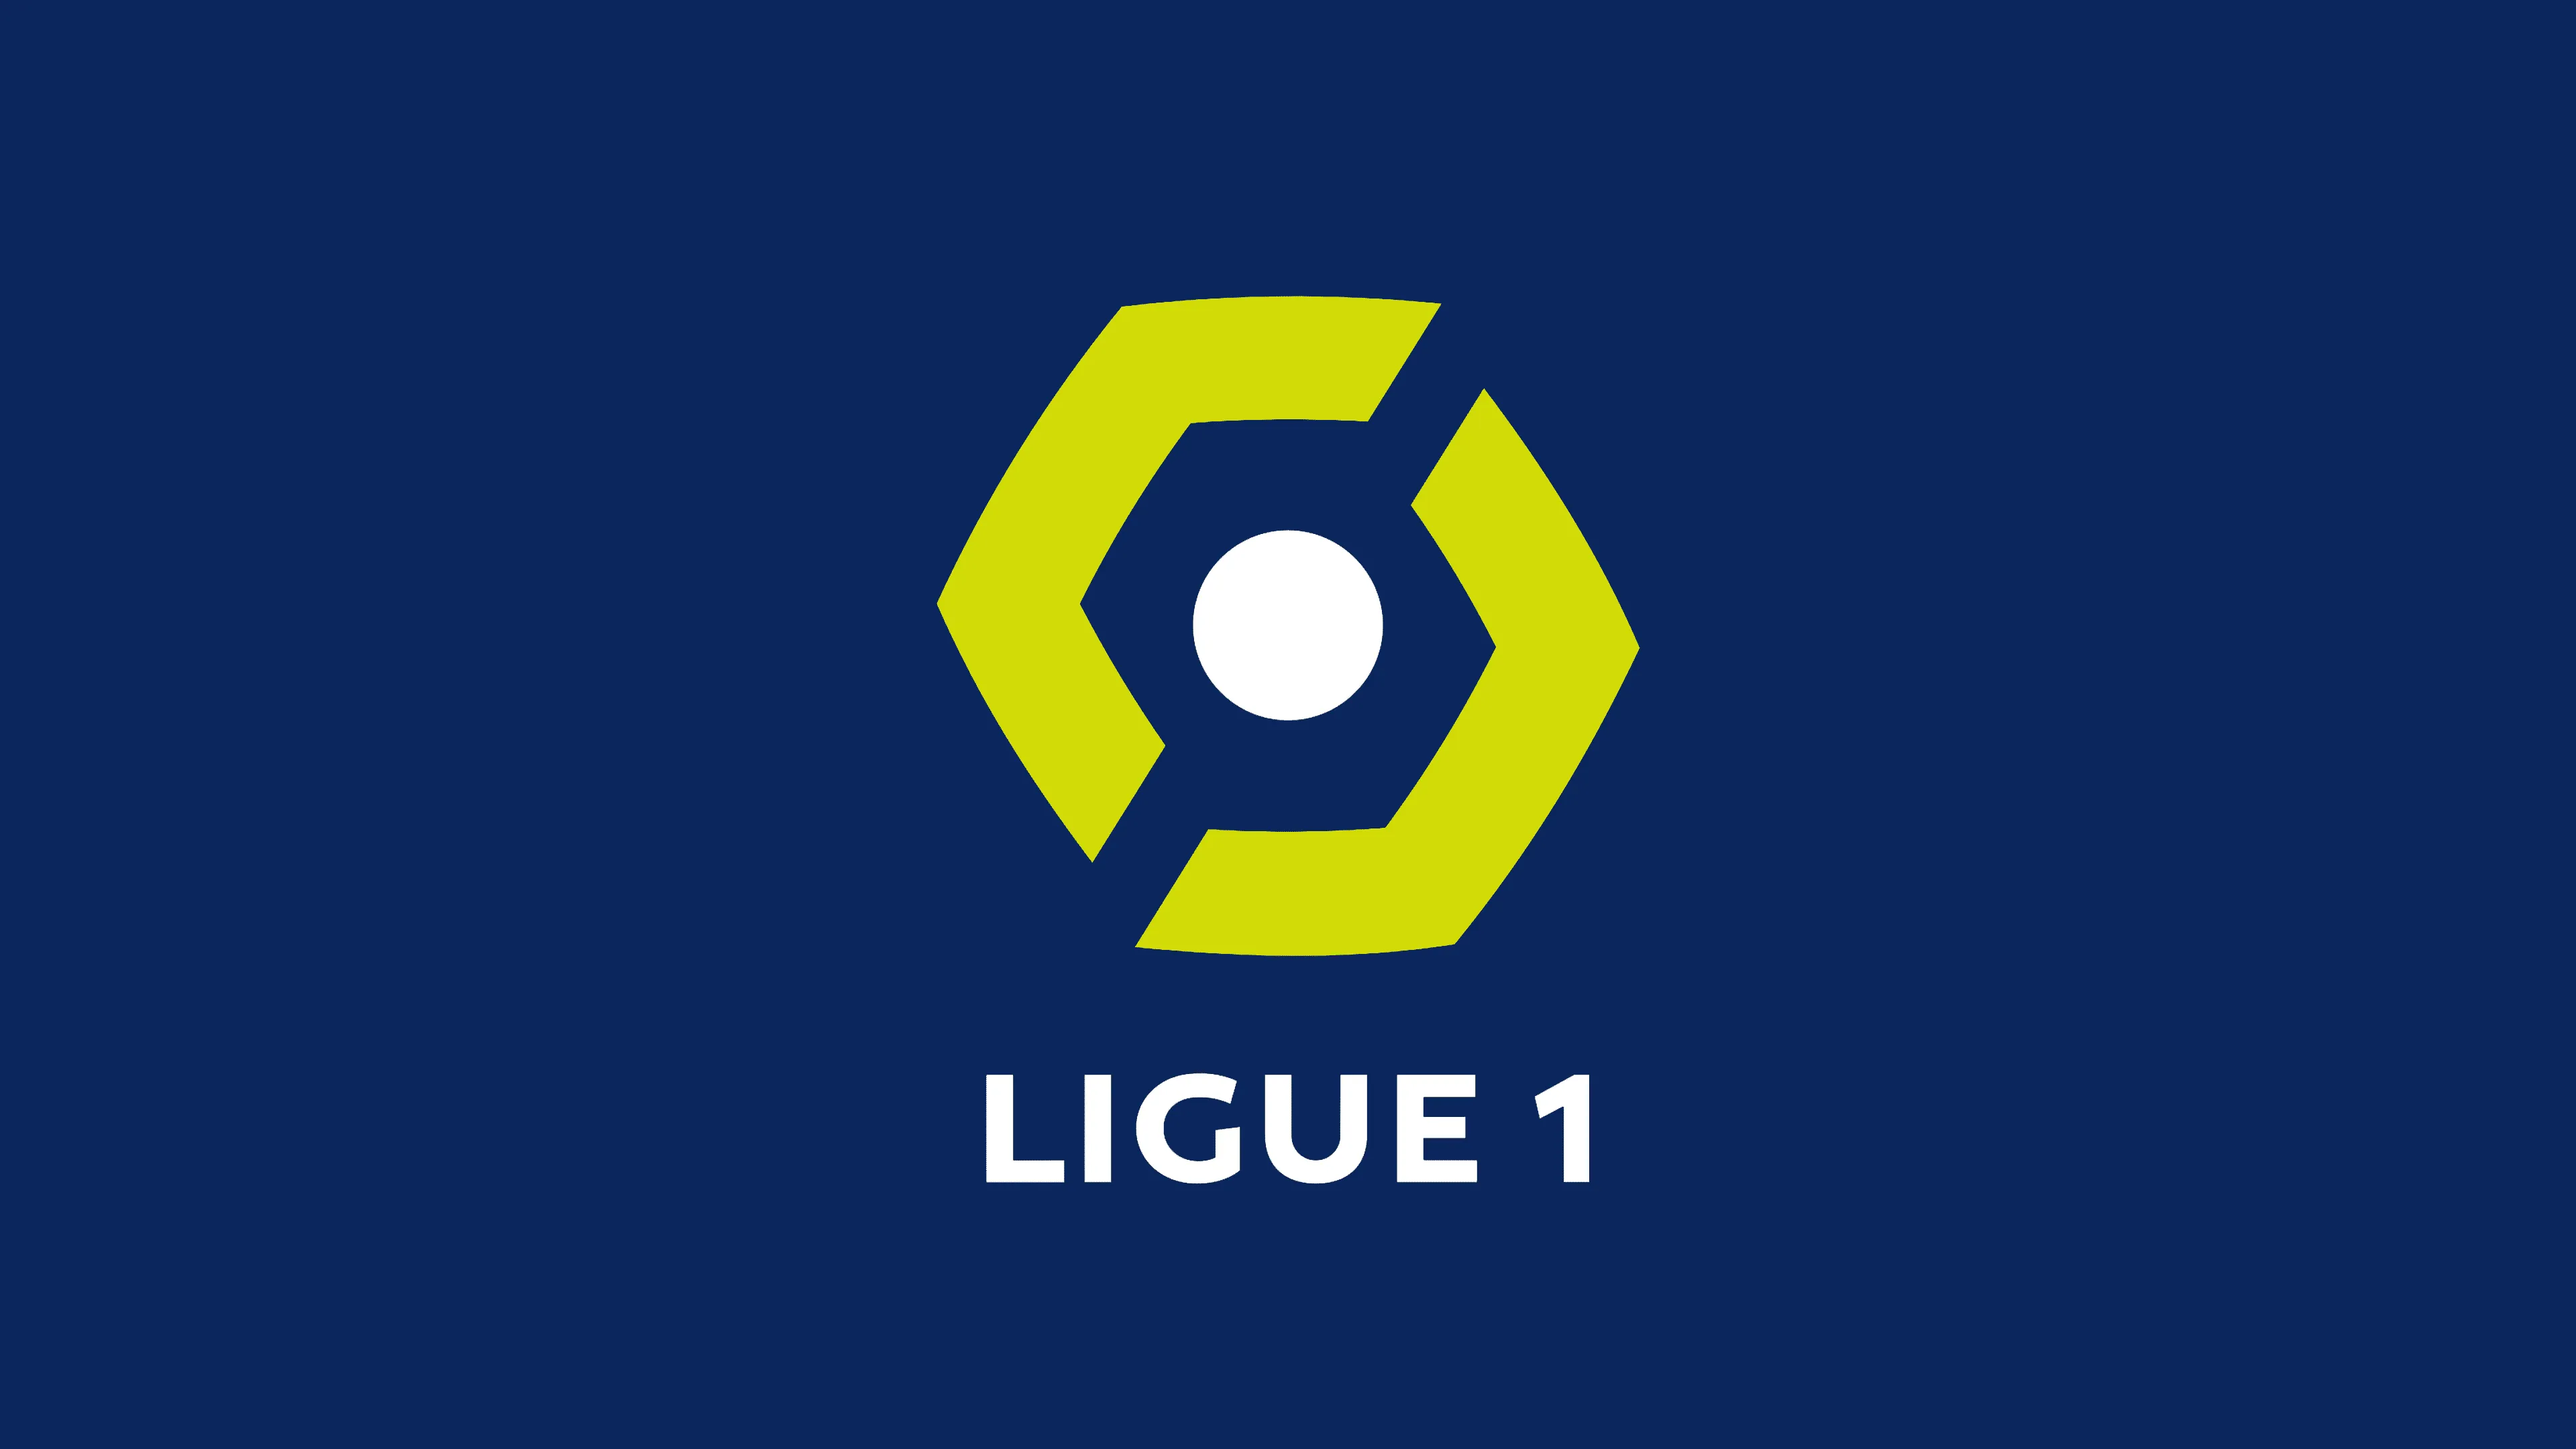 Le Havre - Lyon (14.01, 17:05) promocje